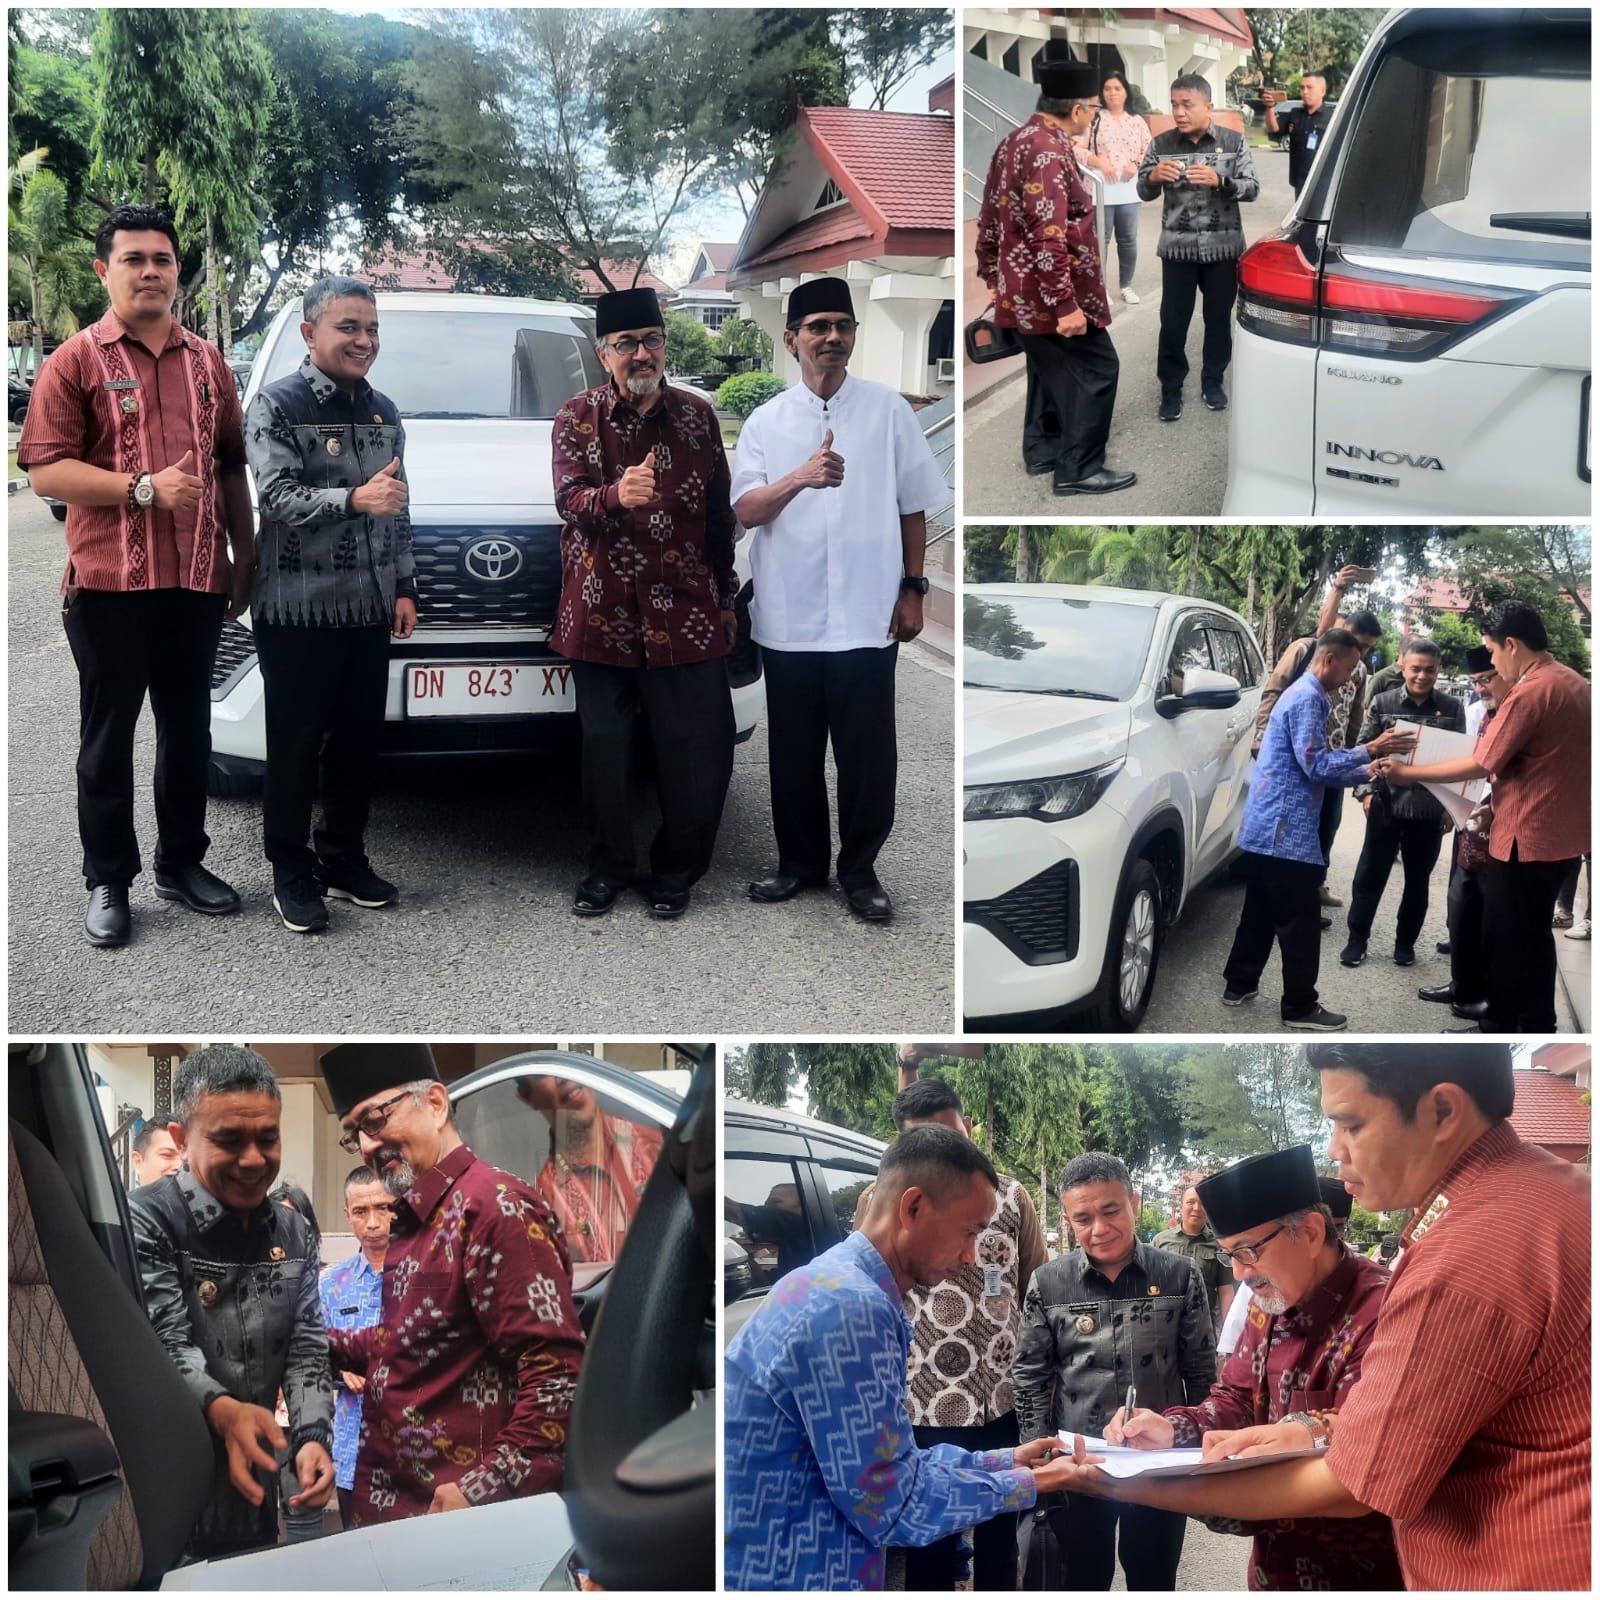 Hadianto Rasyid Serahkan Satu Mobil Operasional Kepada Ketua MUI Kota Palu